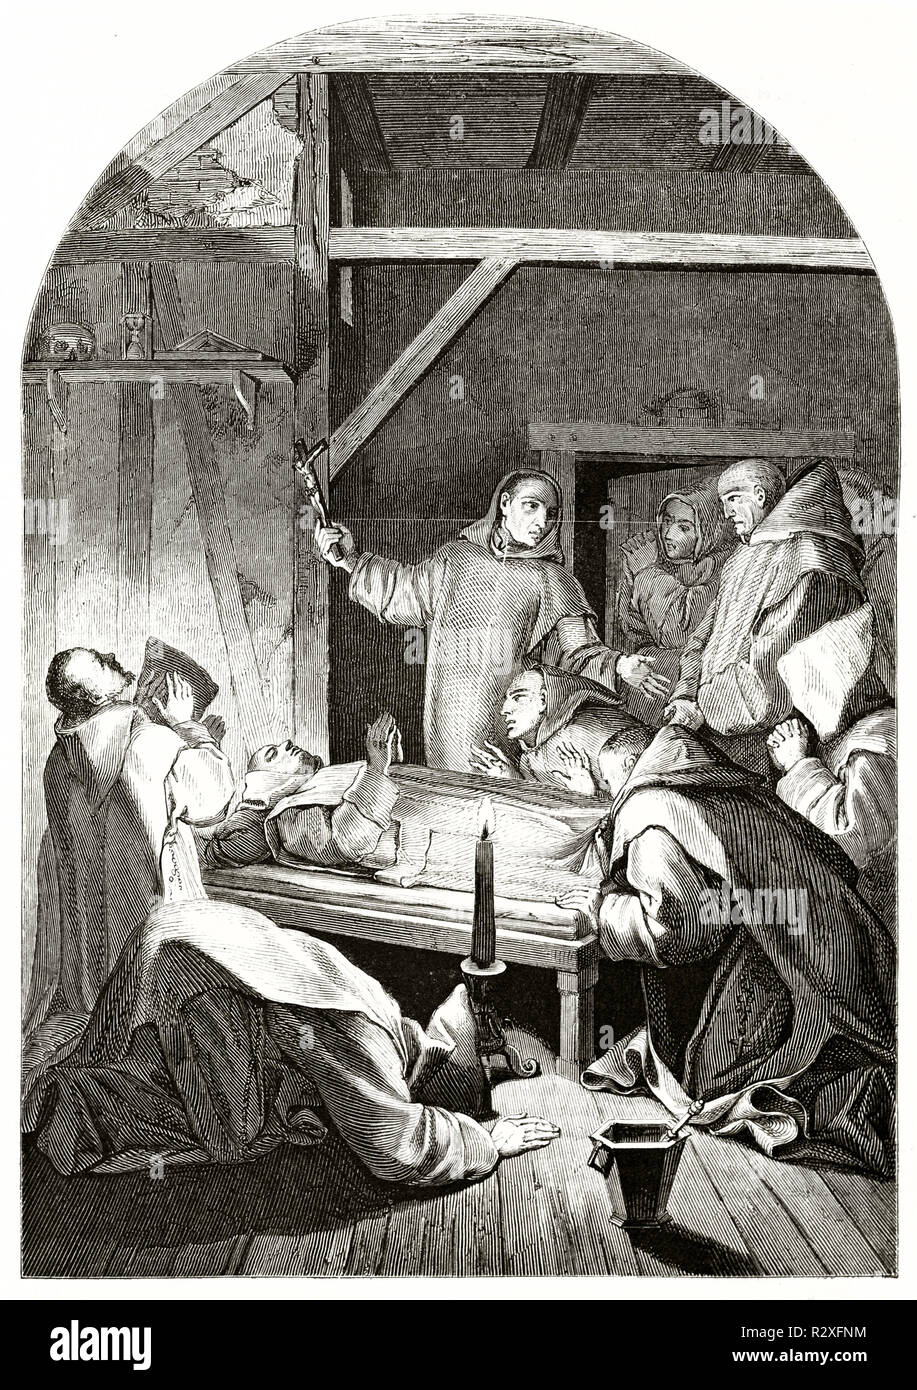 Riproduzione di La Mort de Saint Bruno, da Eustache Lesueur, conservato nel museo del Louvre di Parigi. Publ. su Magasin pittoresco, Parigi, 1846 Foto Stock